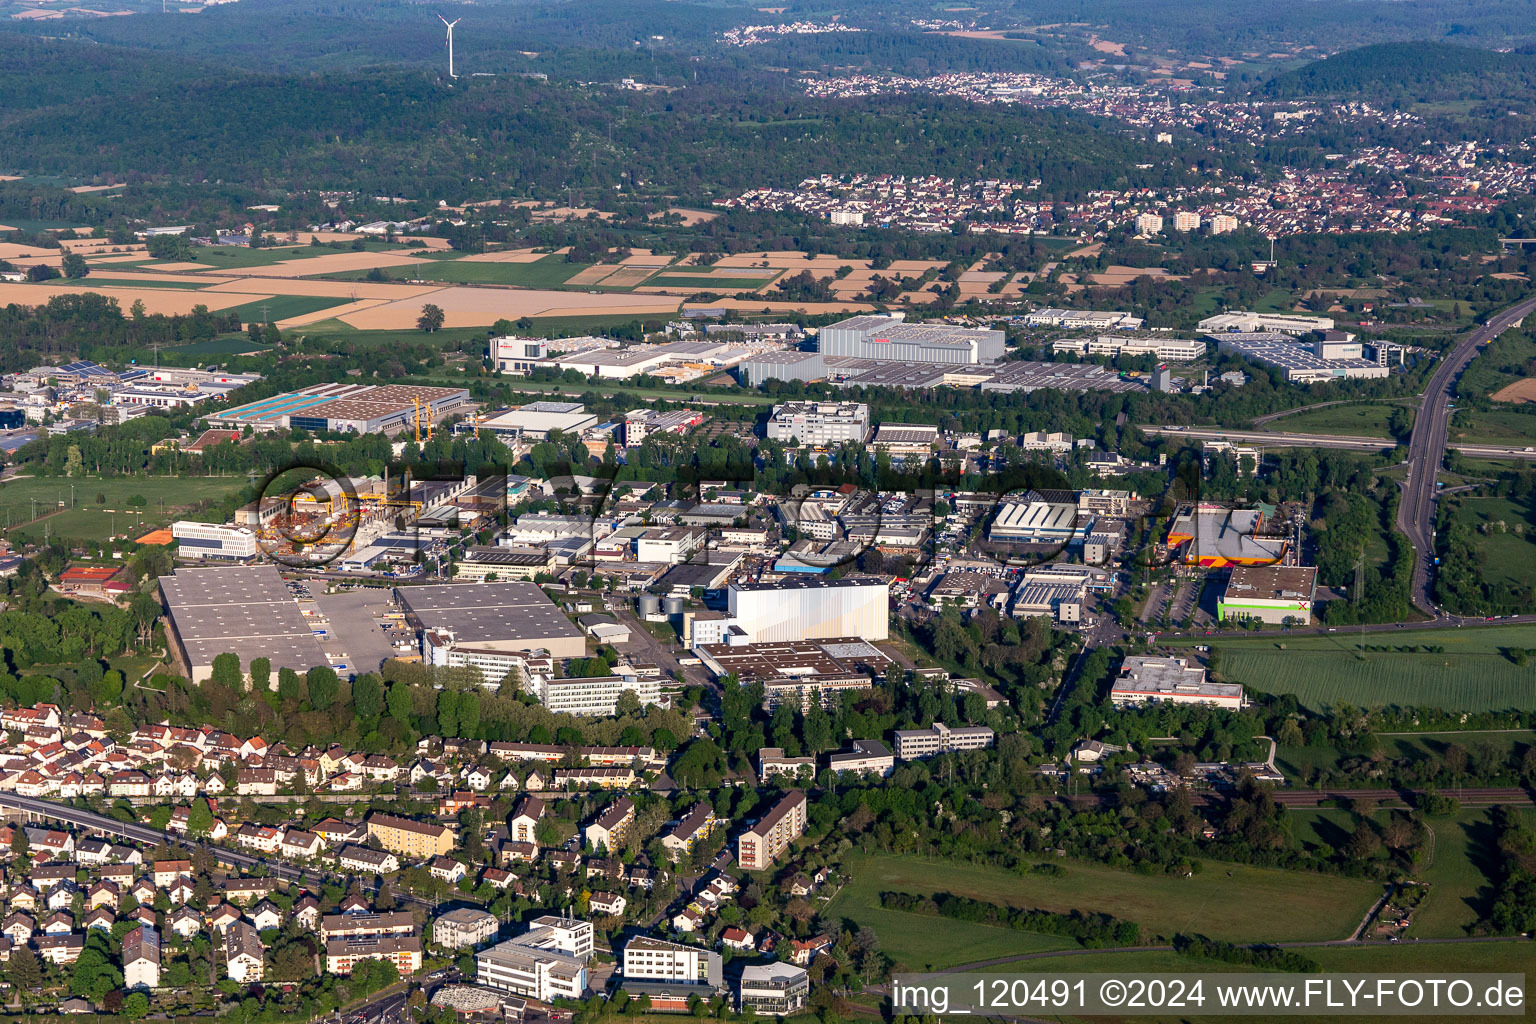 Vue aérienne de Zone industrielle An der Tagweide avec Würth, Mömax, BAMF, Pfizer, Hegele à le quartier Hagsfeld in Karlsruhe dans le département Bade-Wurtemberg, Allemagne